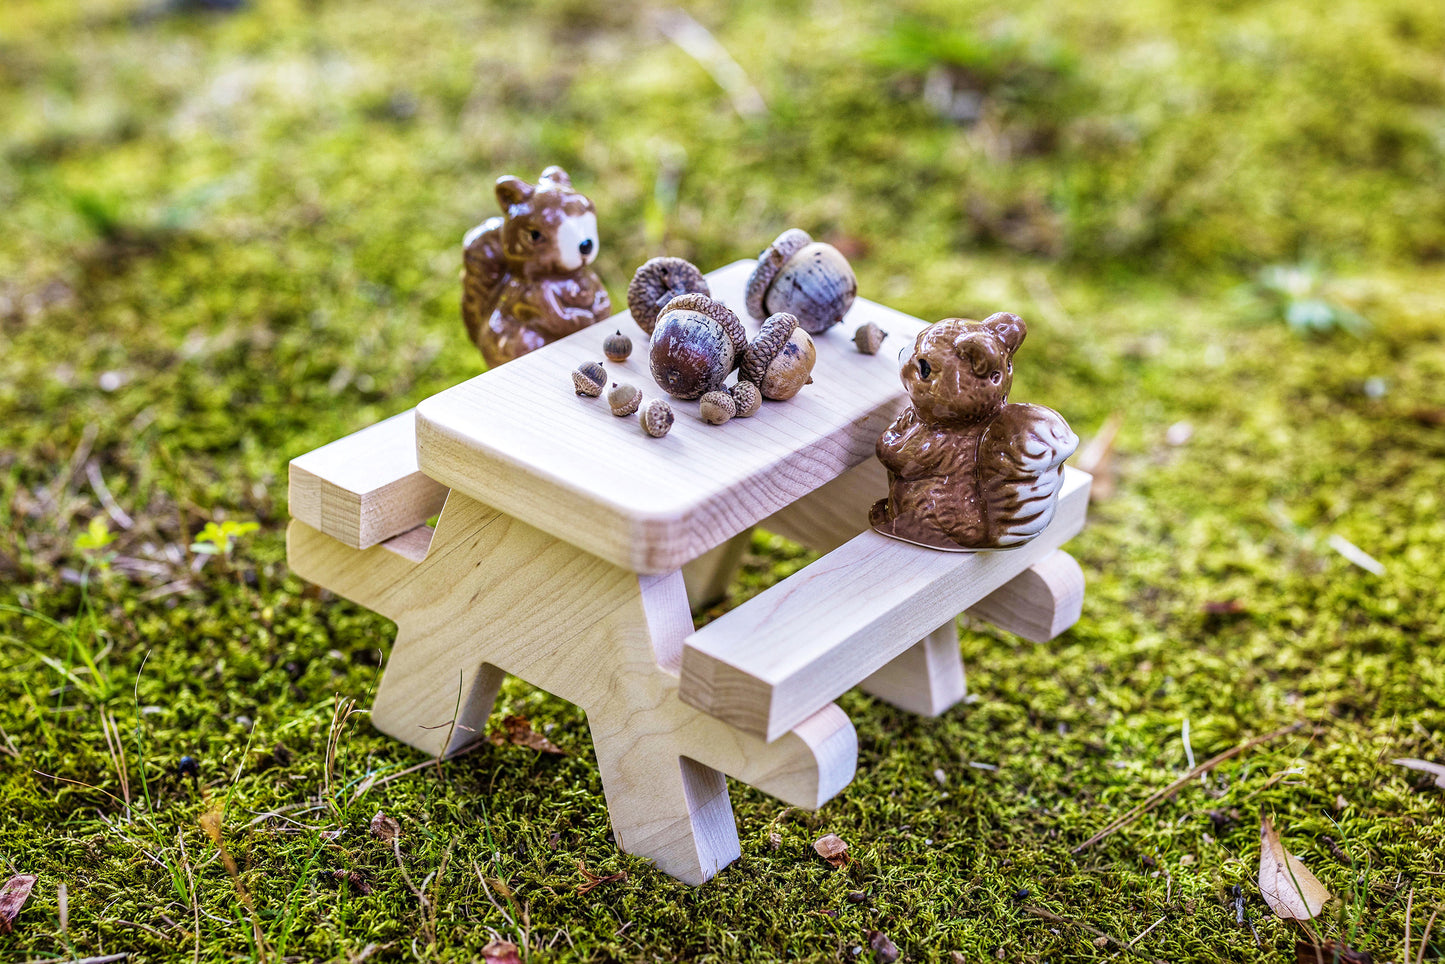 Mini picnic table project kit